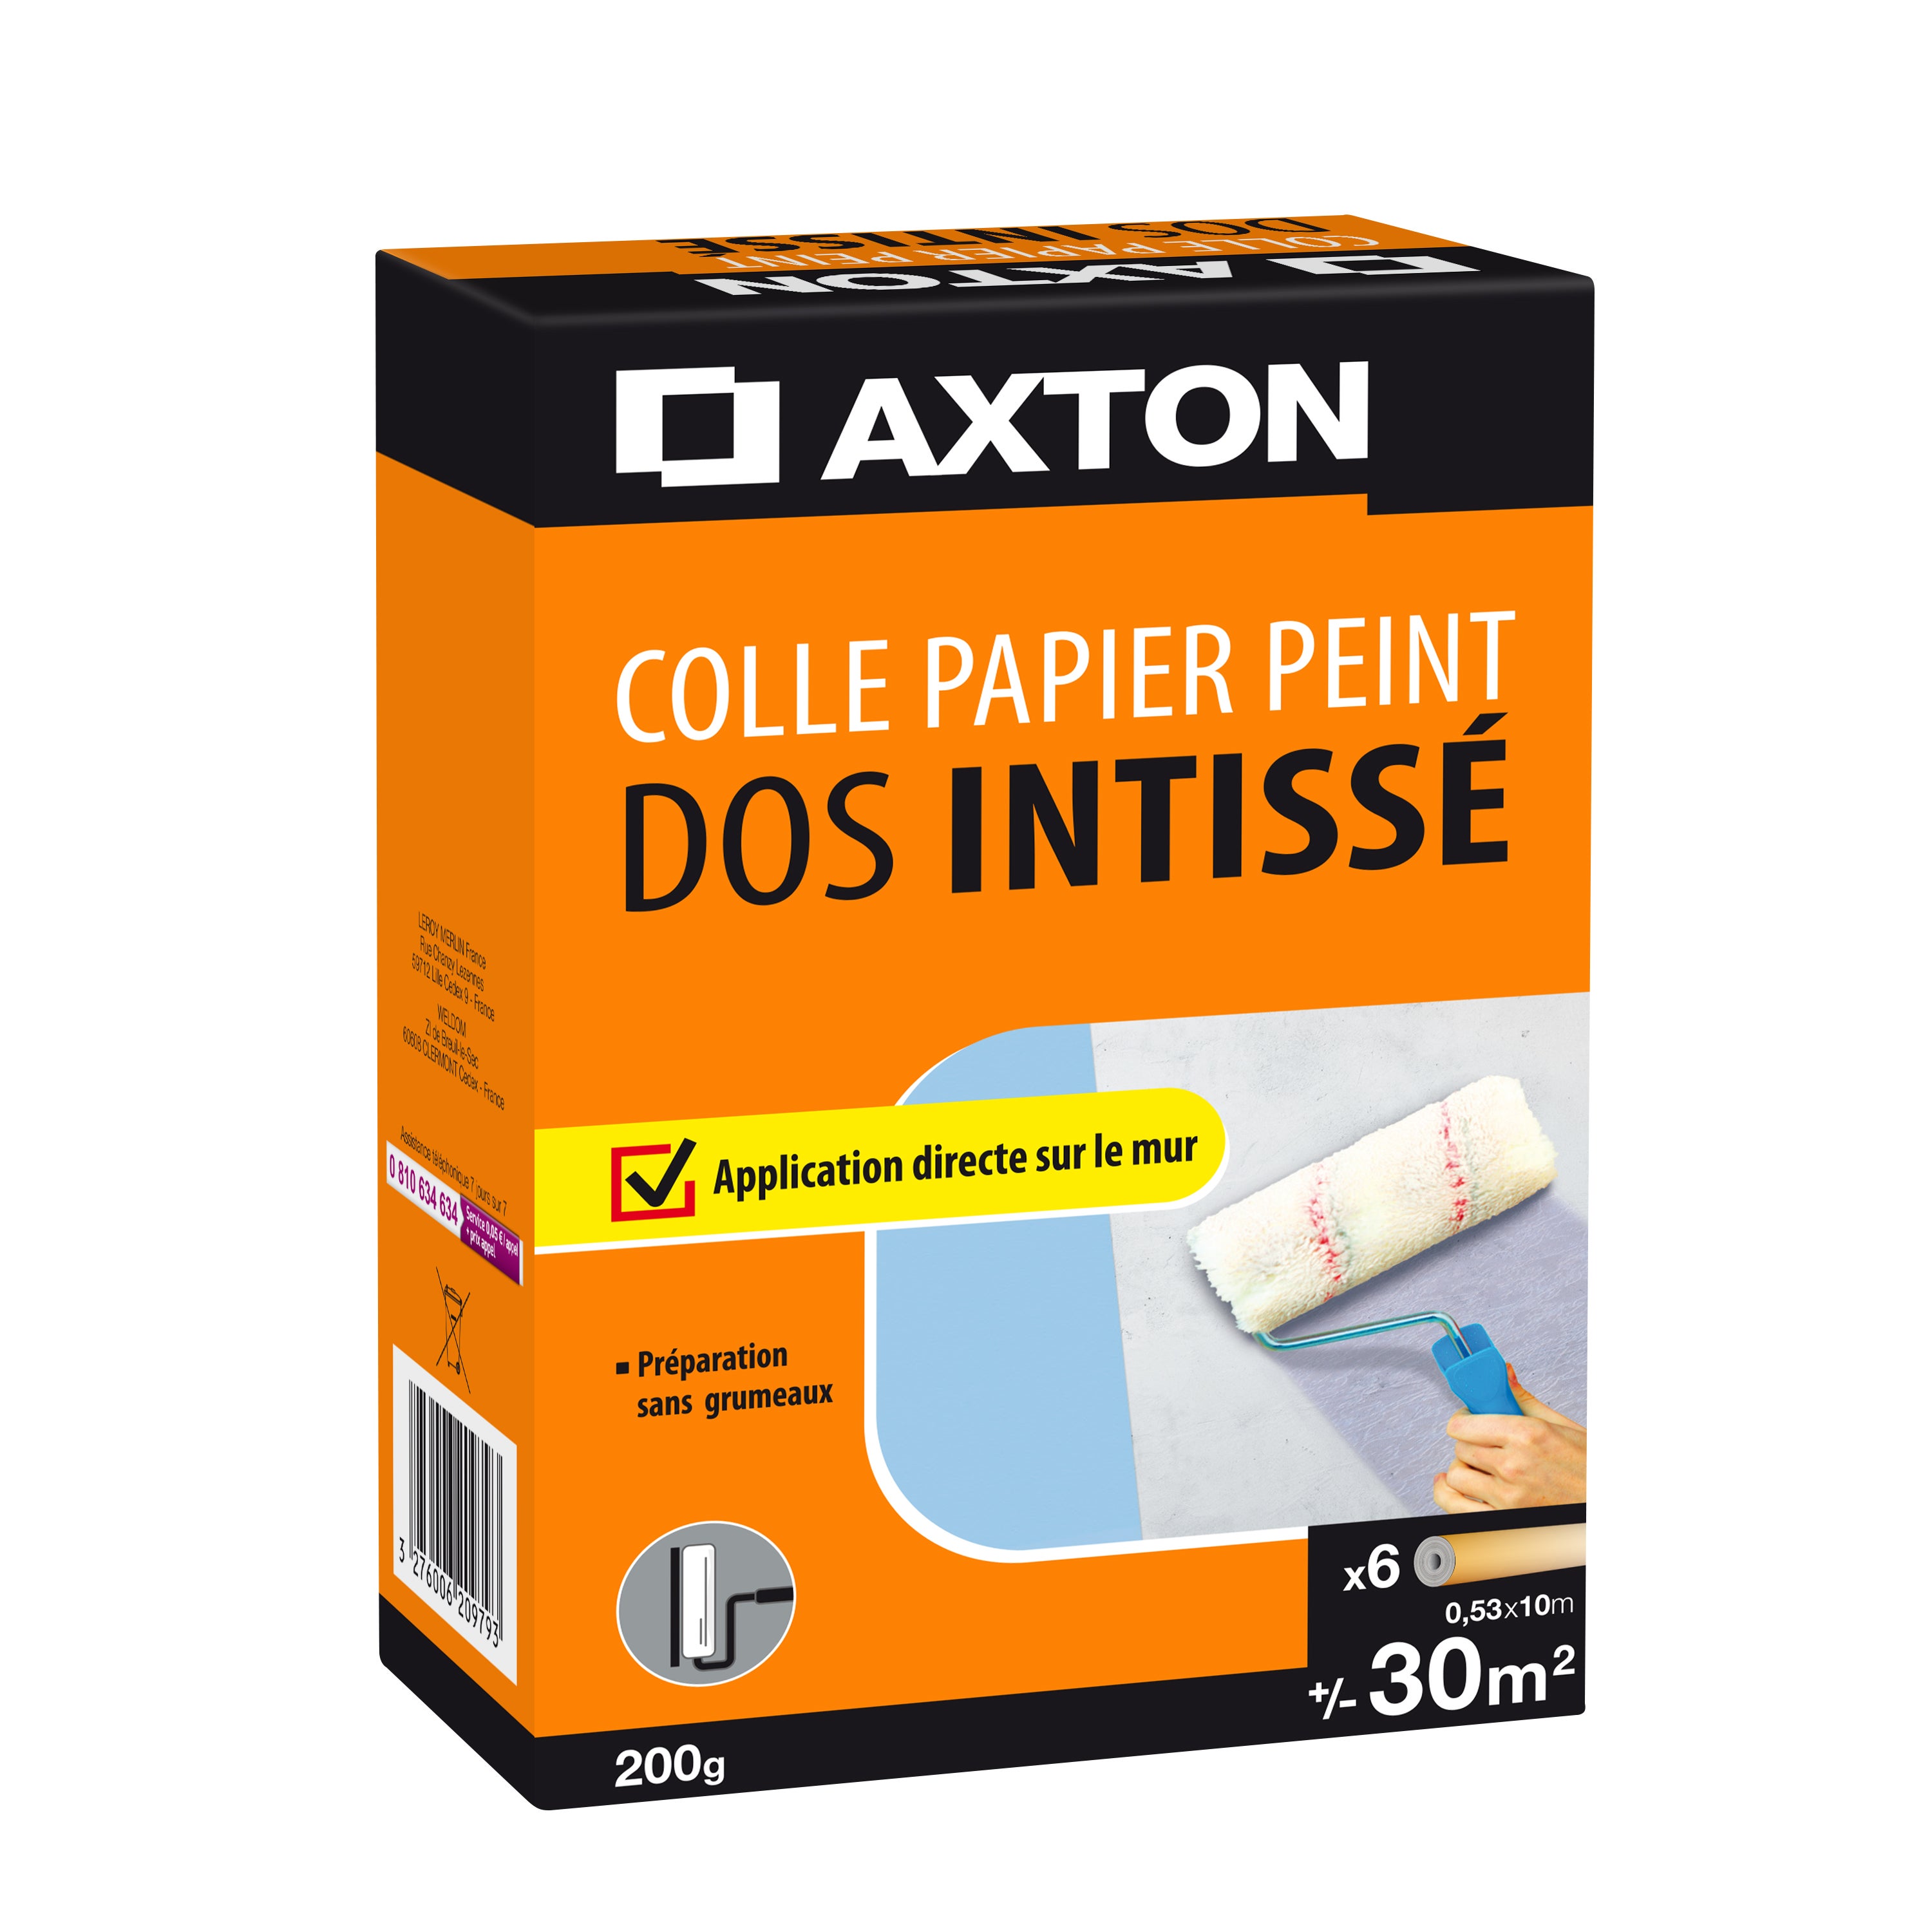 Colle papier peint, AXTON, 0.05 kg